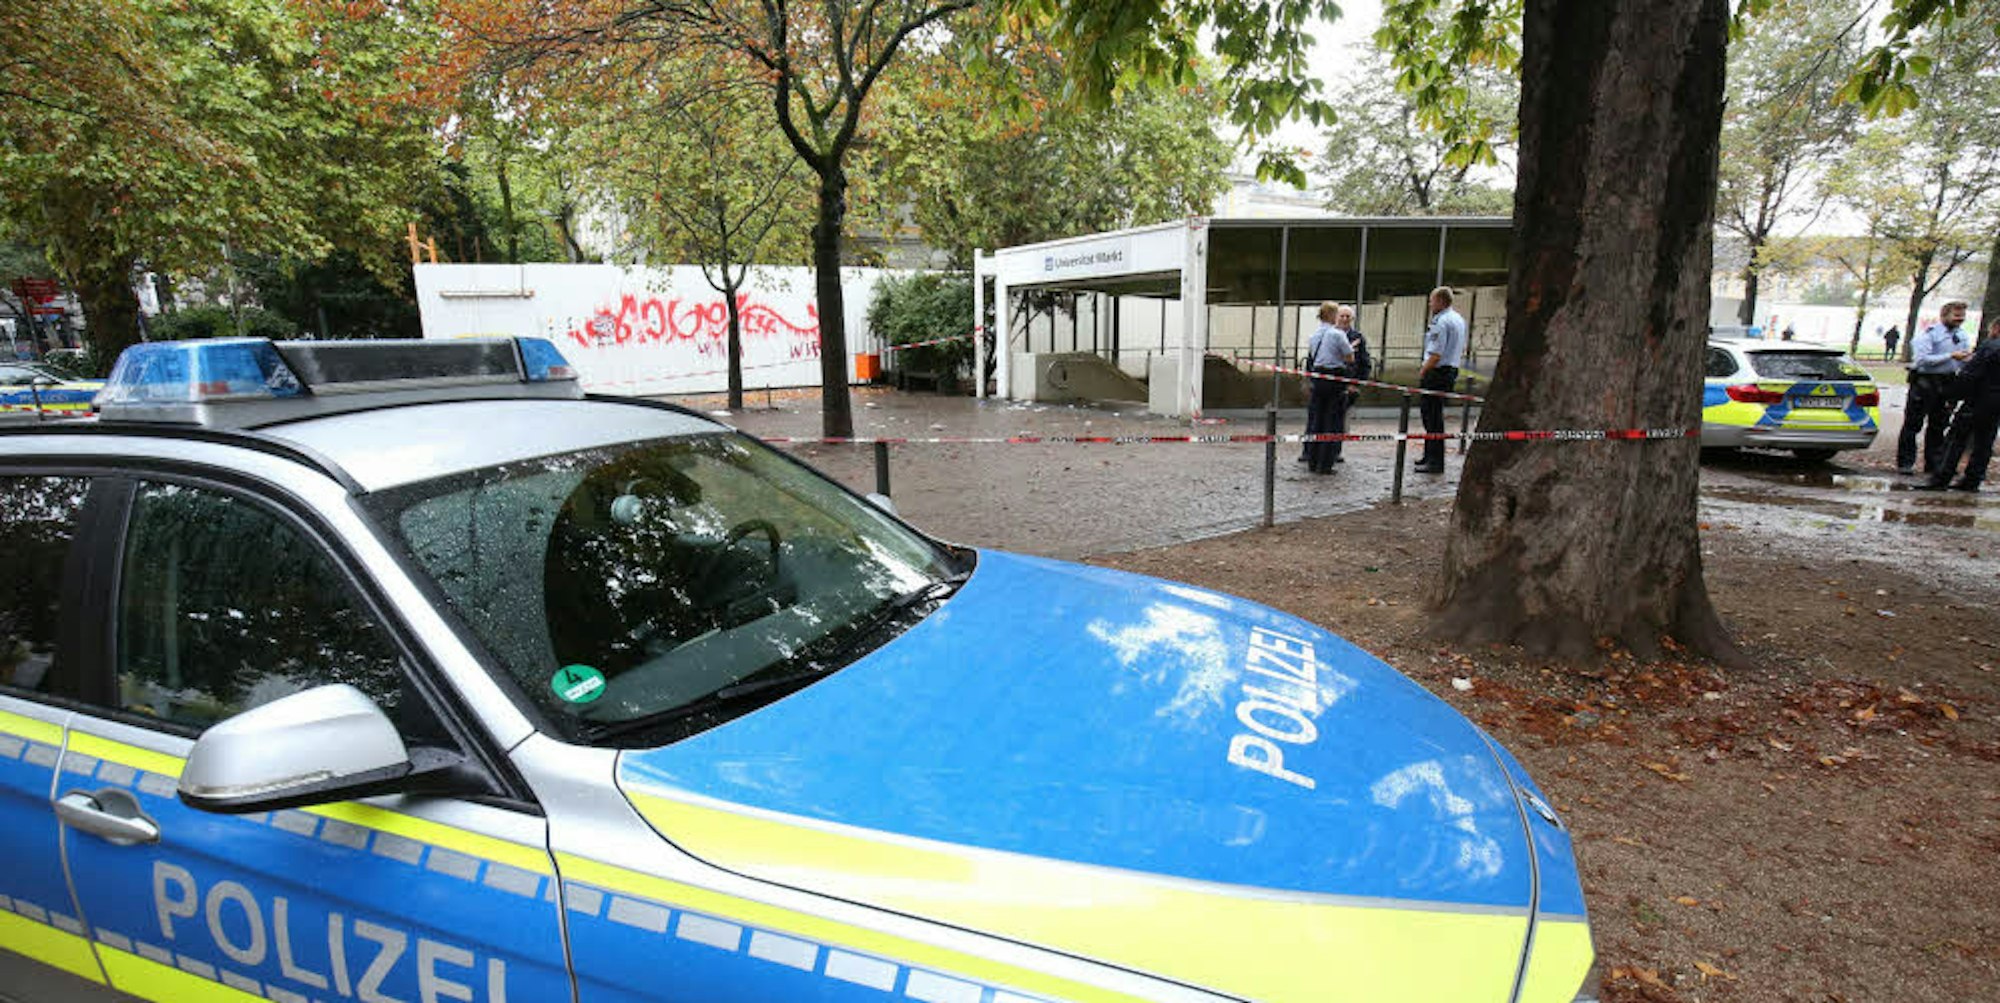 Rund um den U-Bahn-Zugang Universität/Markt am Bonner Hofgarten sicherte die Polizei am Sonntag nach der gewalttätigen Auseinandersetzung Spuren.